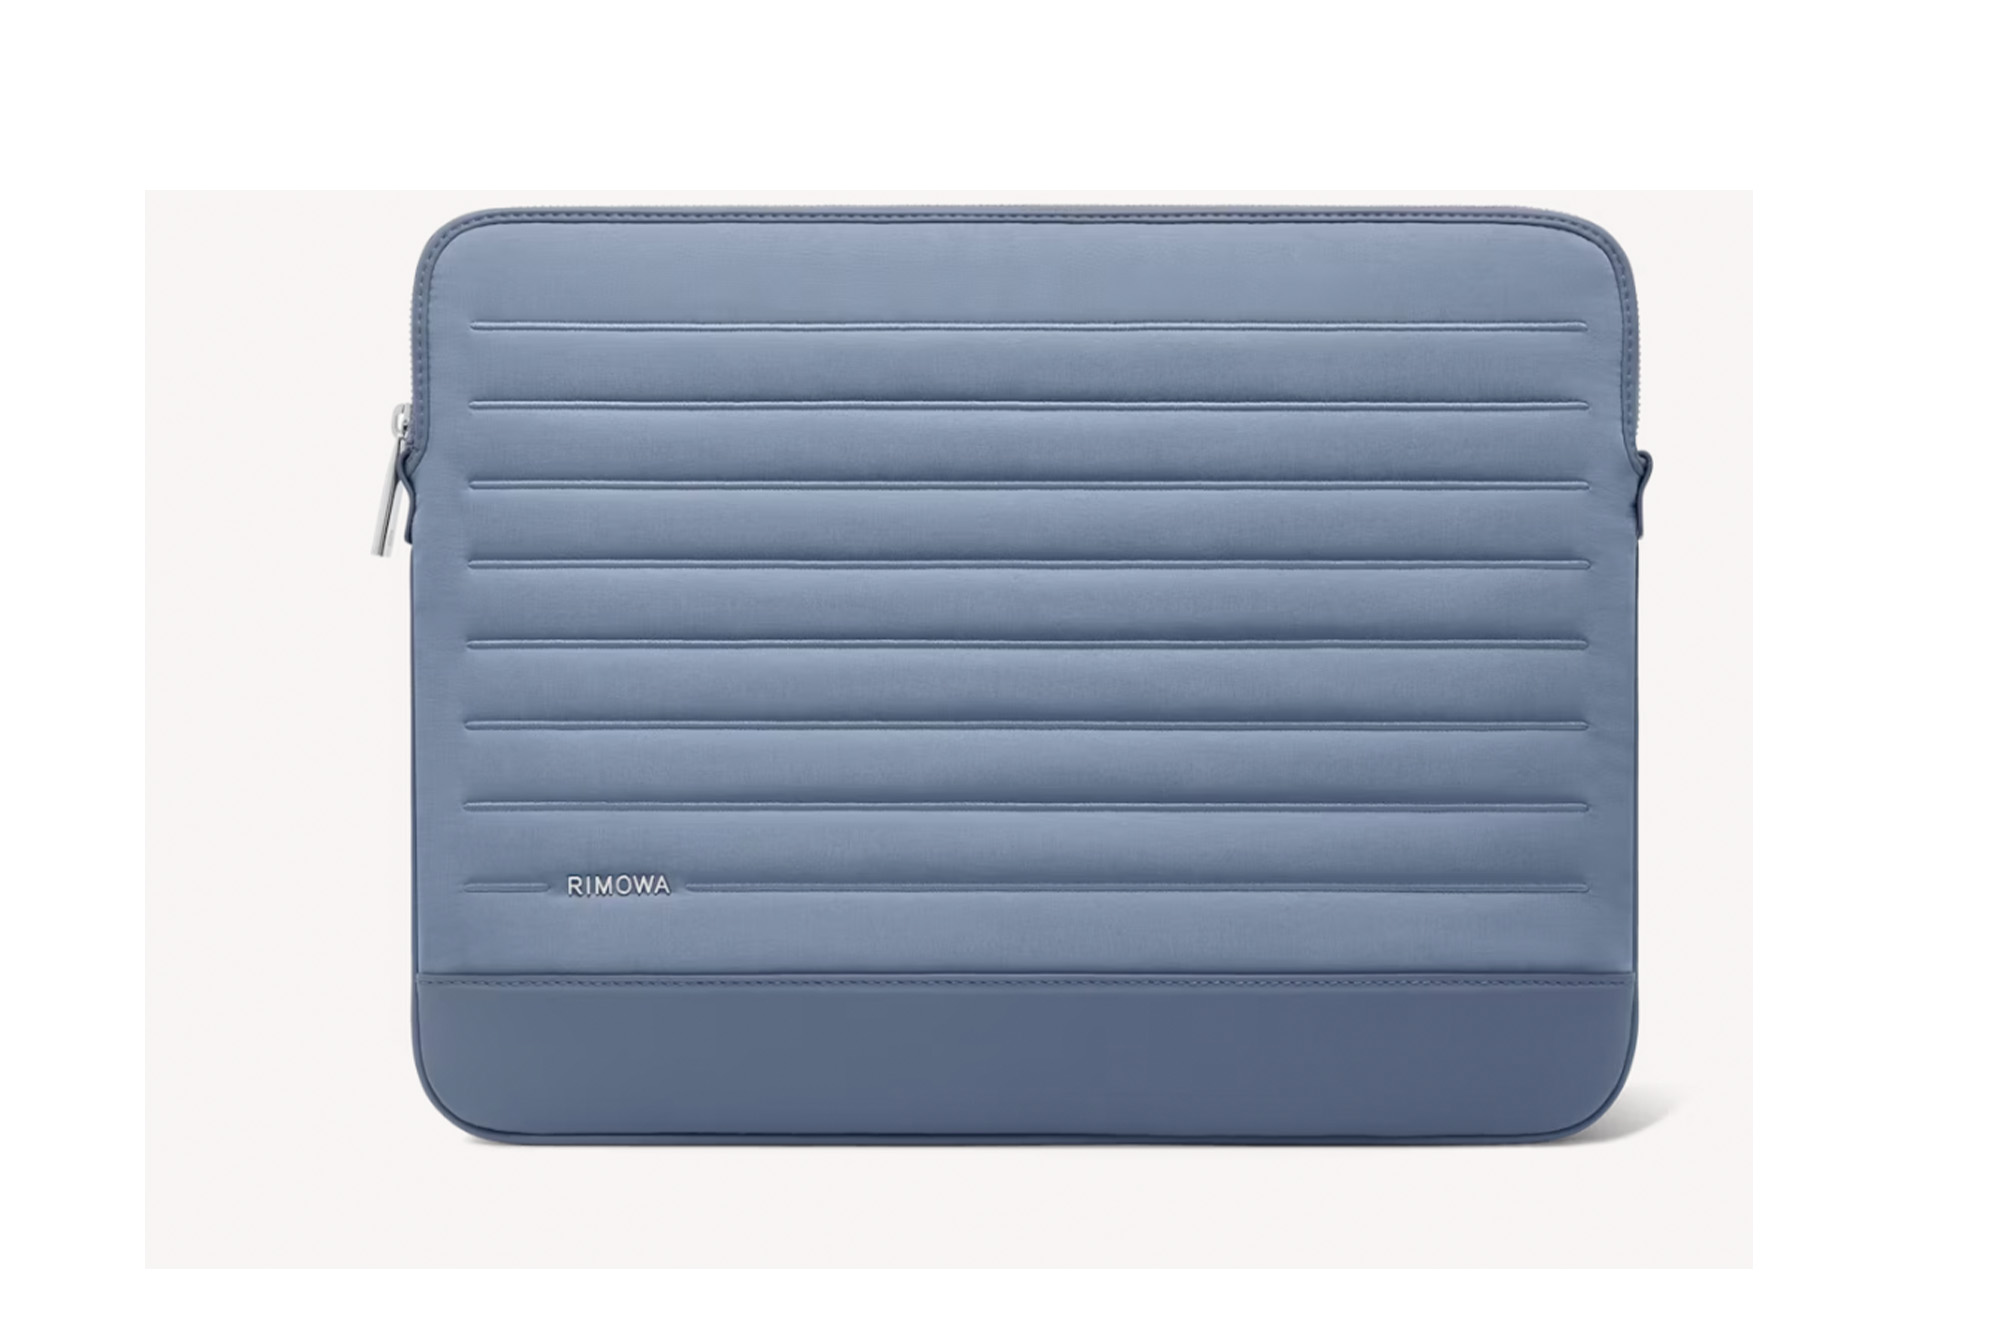 A Rimowa laptop case